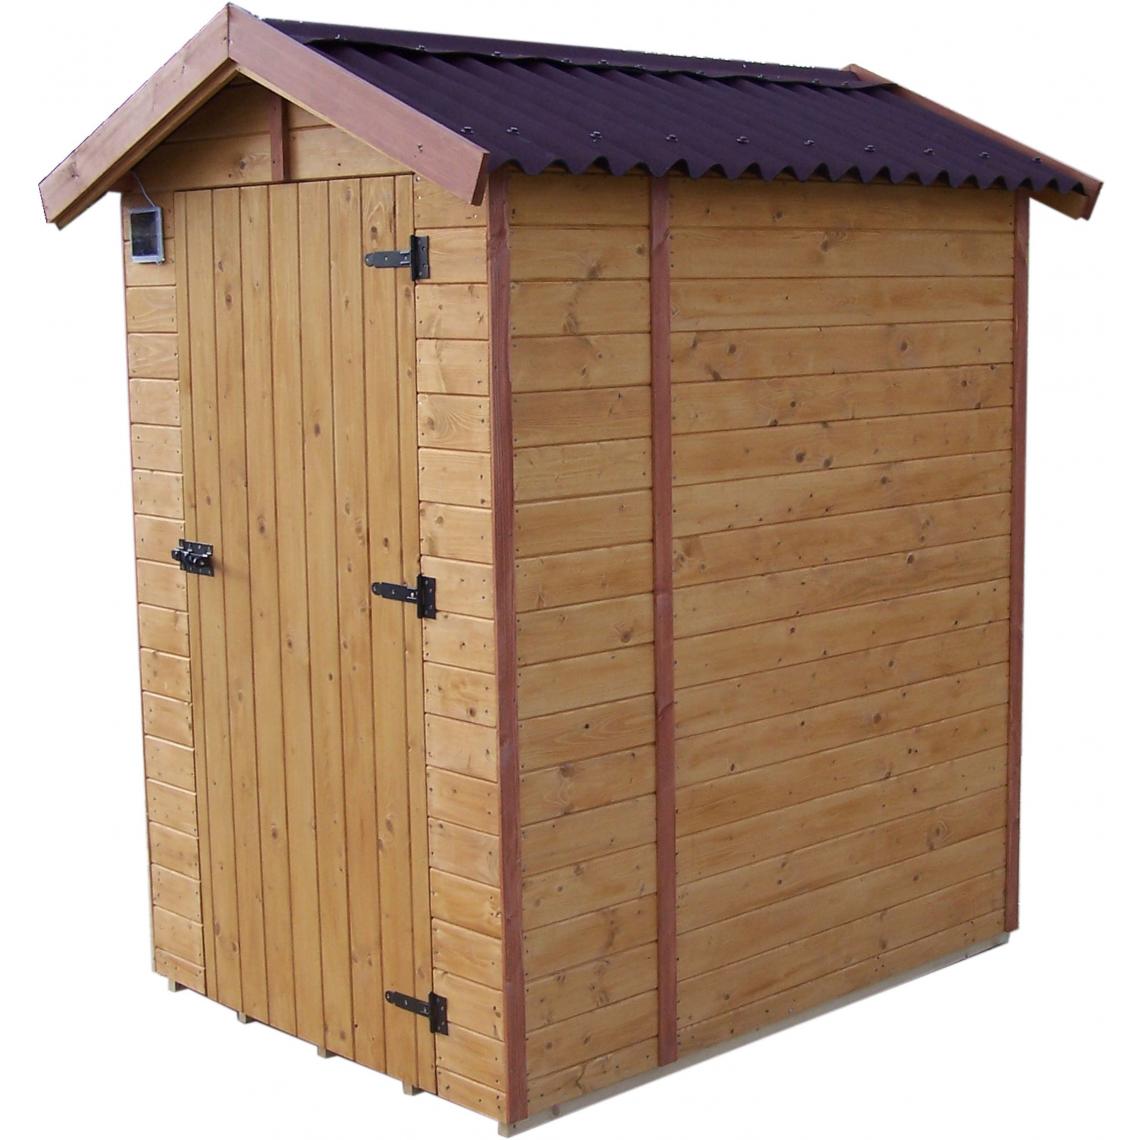 Habrita - Abri EDEN toilettes sèches bois massif avec plancher avec panneau épaisseur 16 mm - Abris de jardin en bois